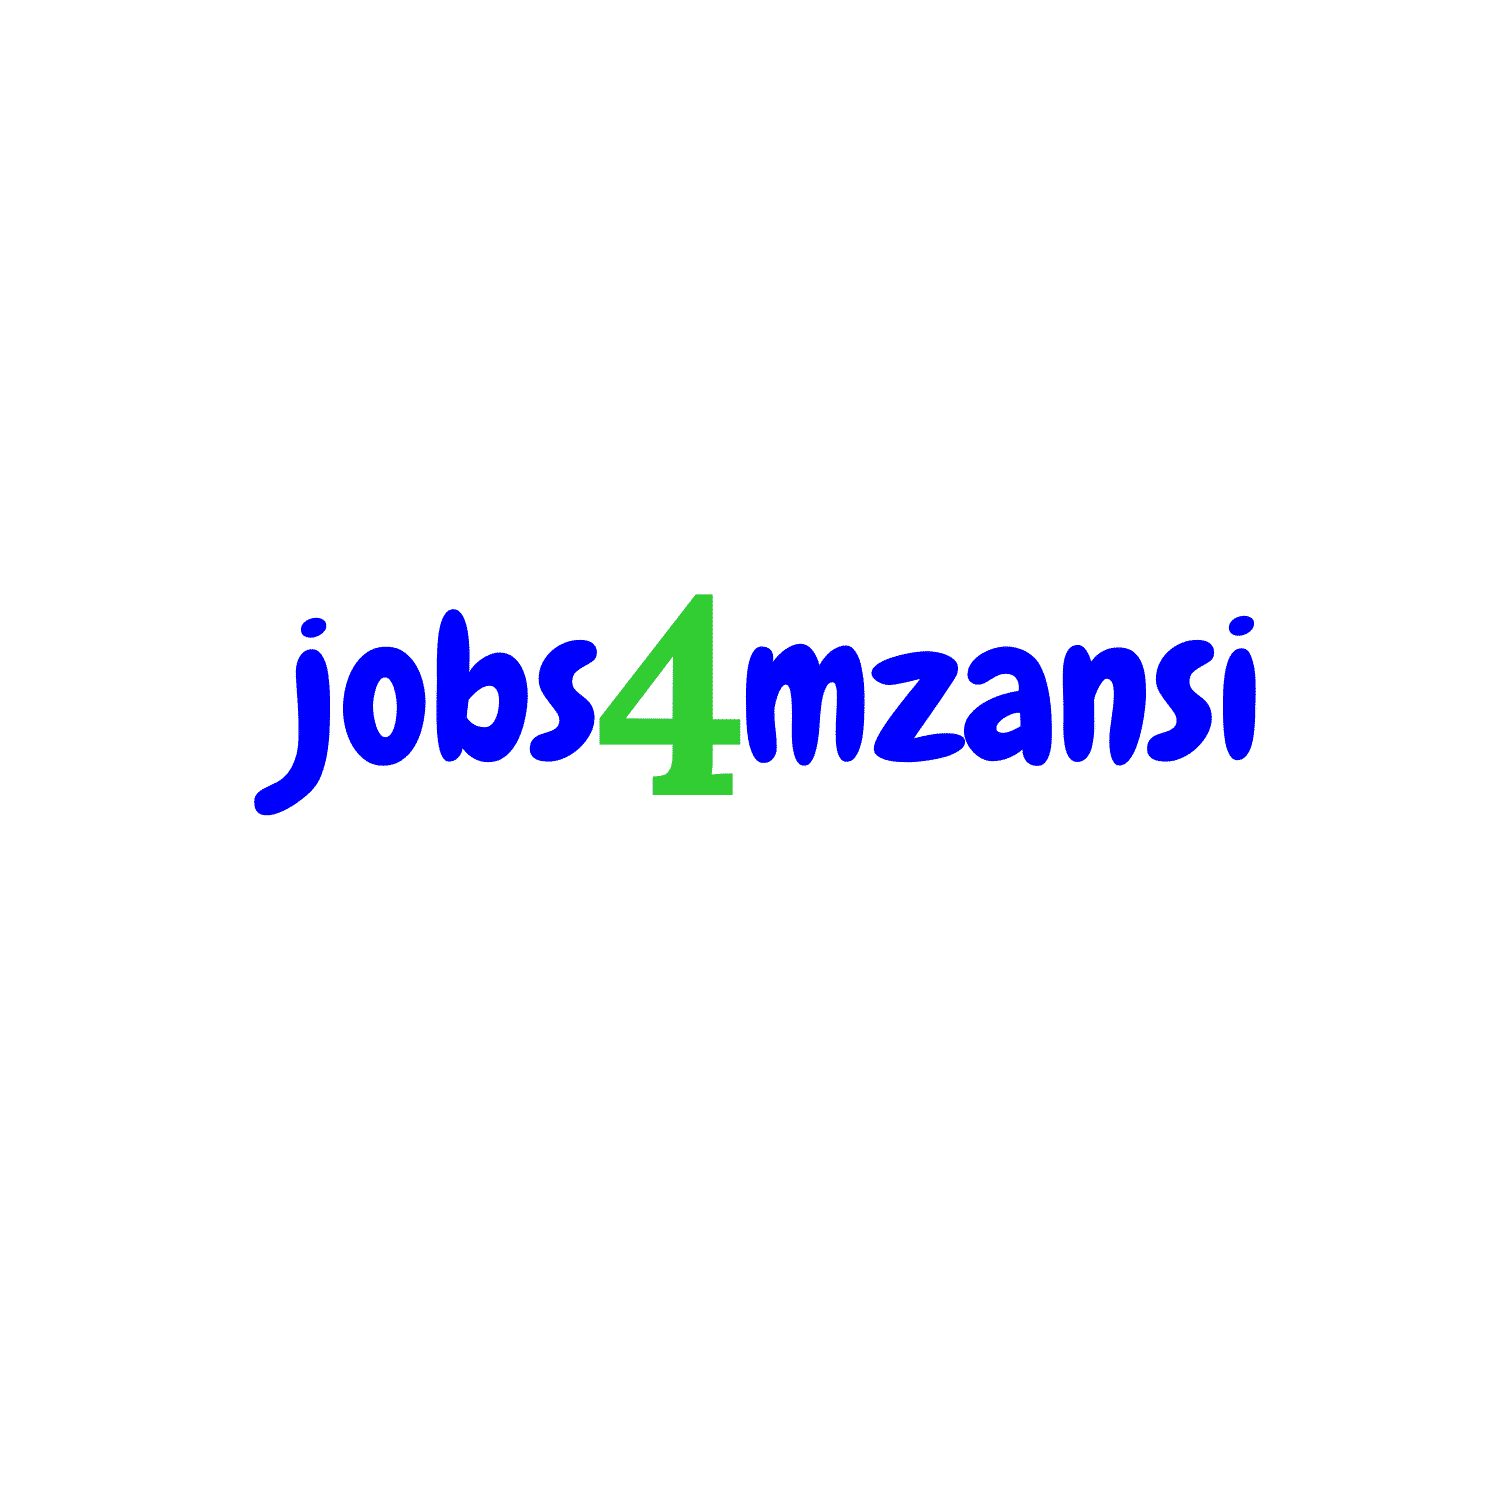 jobs4mzansi